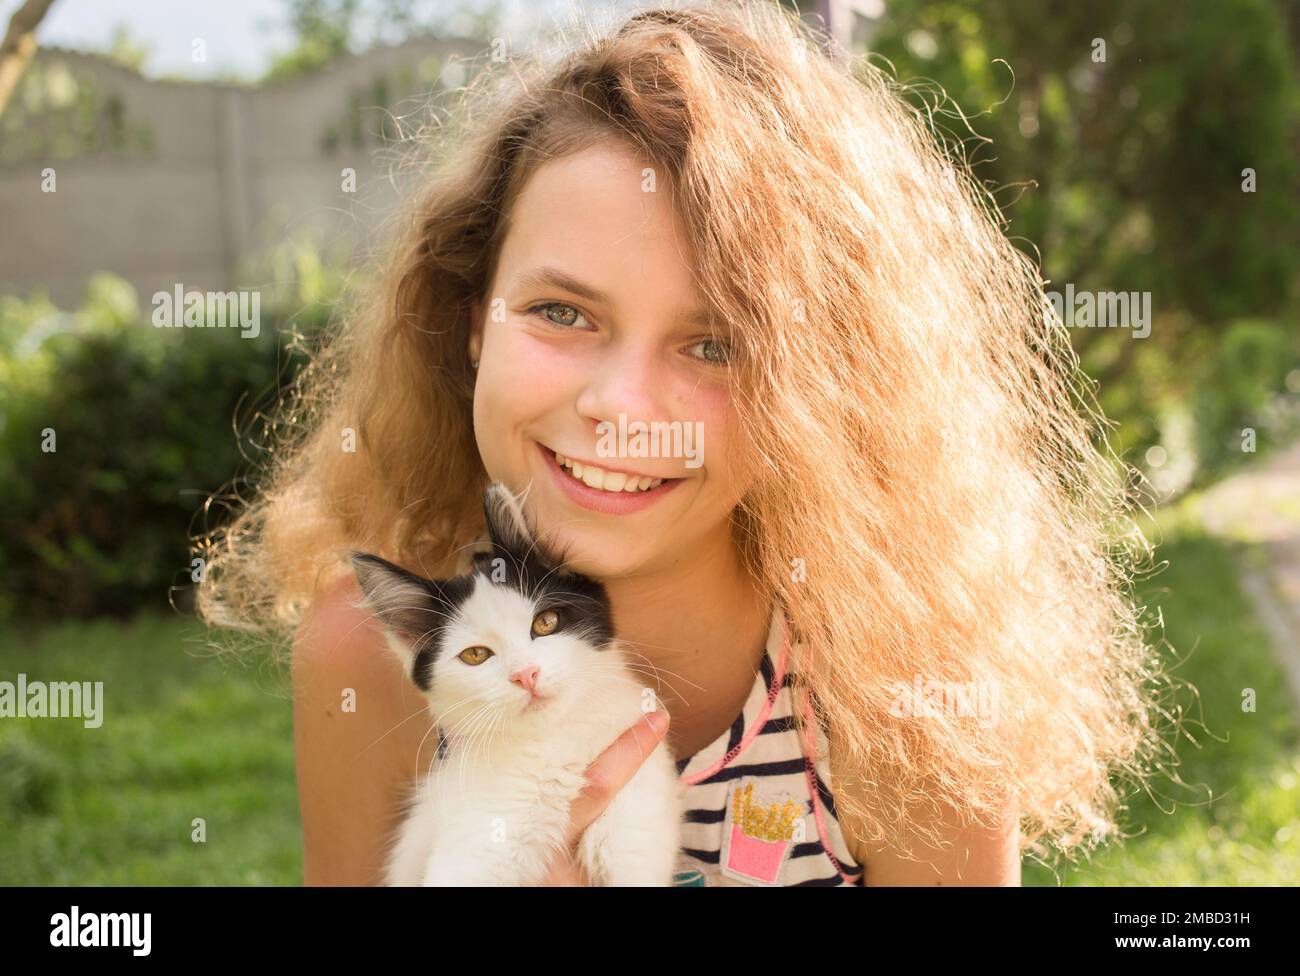 Gesichtsbild eines glücklichen Mädchens, 12 Jahre alt, und eines kleinen schwarz-weißen Kätzchens. Katzentag. Fröhliche Kindheit mit einem flauschigen Lieblingstier. Positive Atmosphäre, Stockfoto